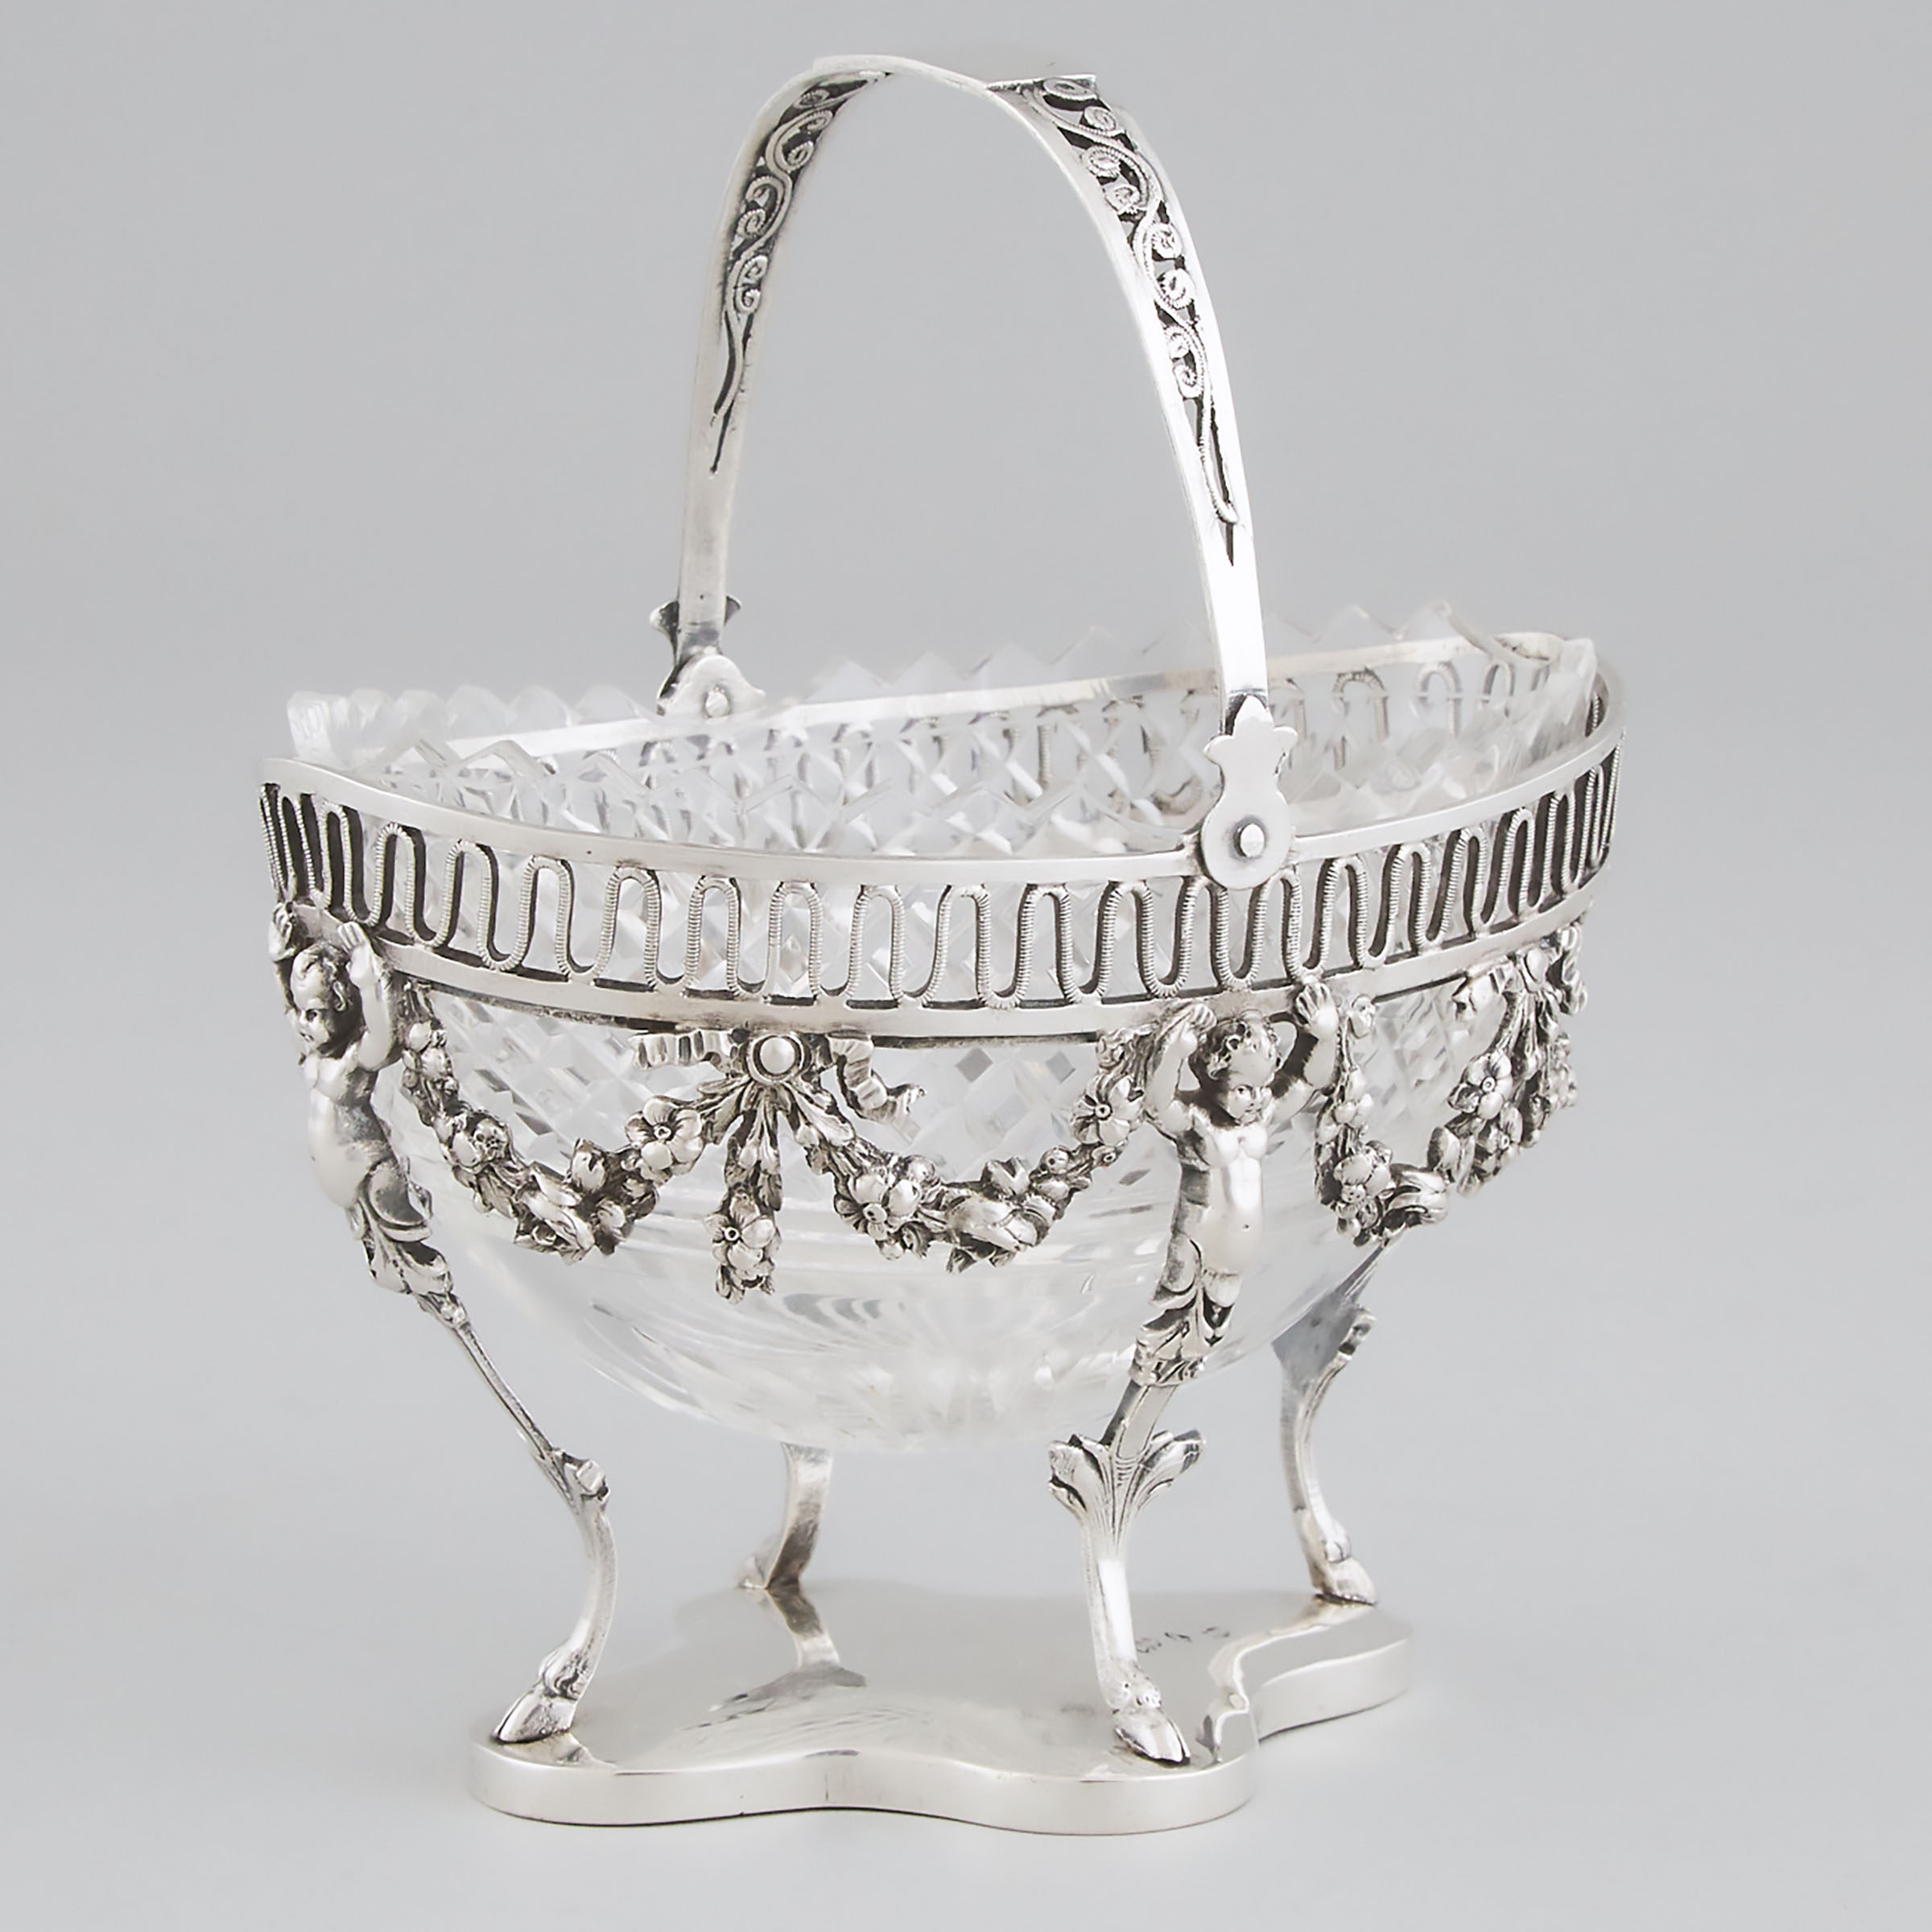 German Silver Sugar Basket, probably Hanau, late 19th century